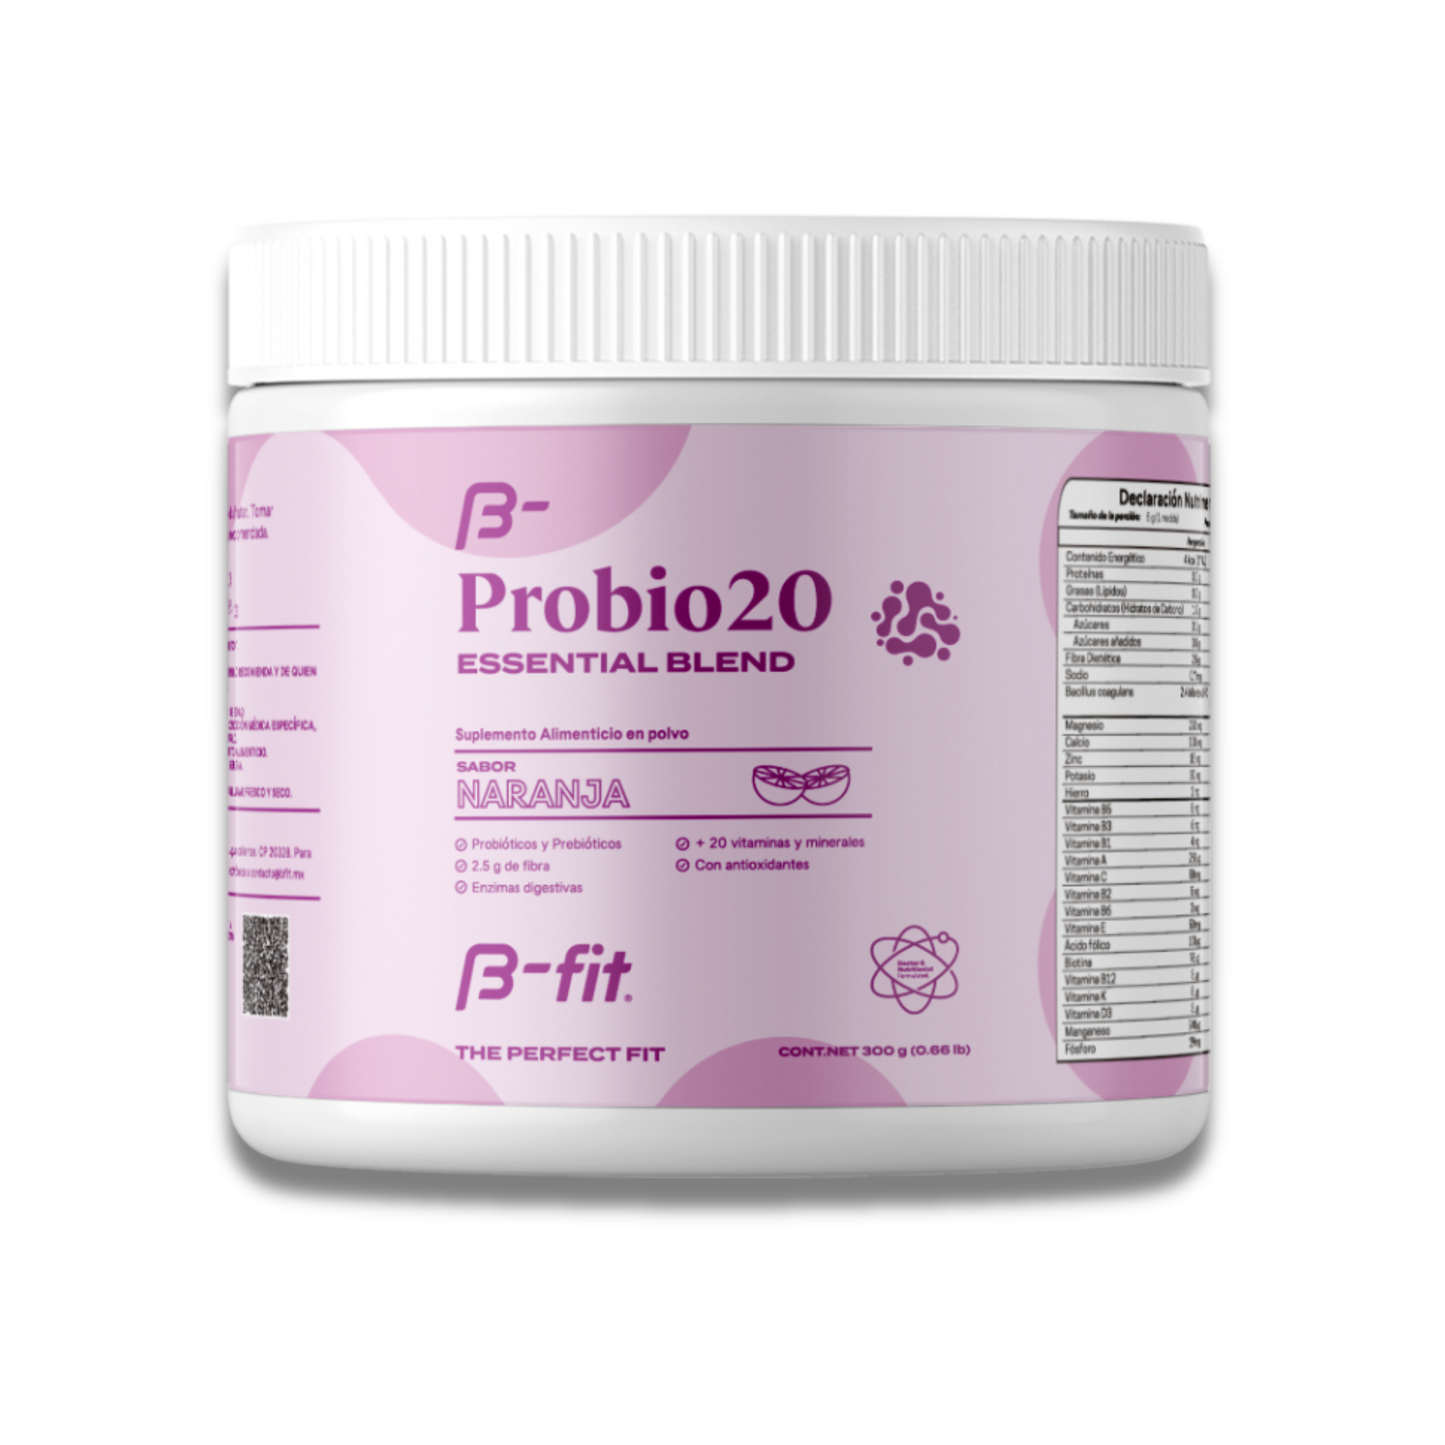 Prebióticos y probióticos en polvo con fibra y 20 vitaminas y minerales. Sabor Naranja ProBio-20 - 300g